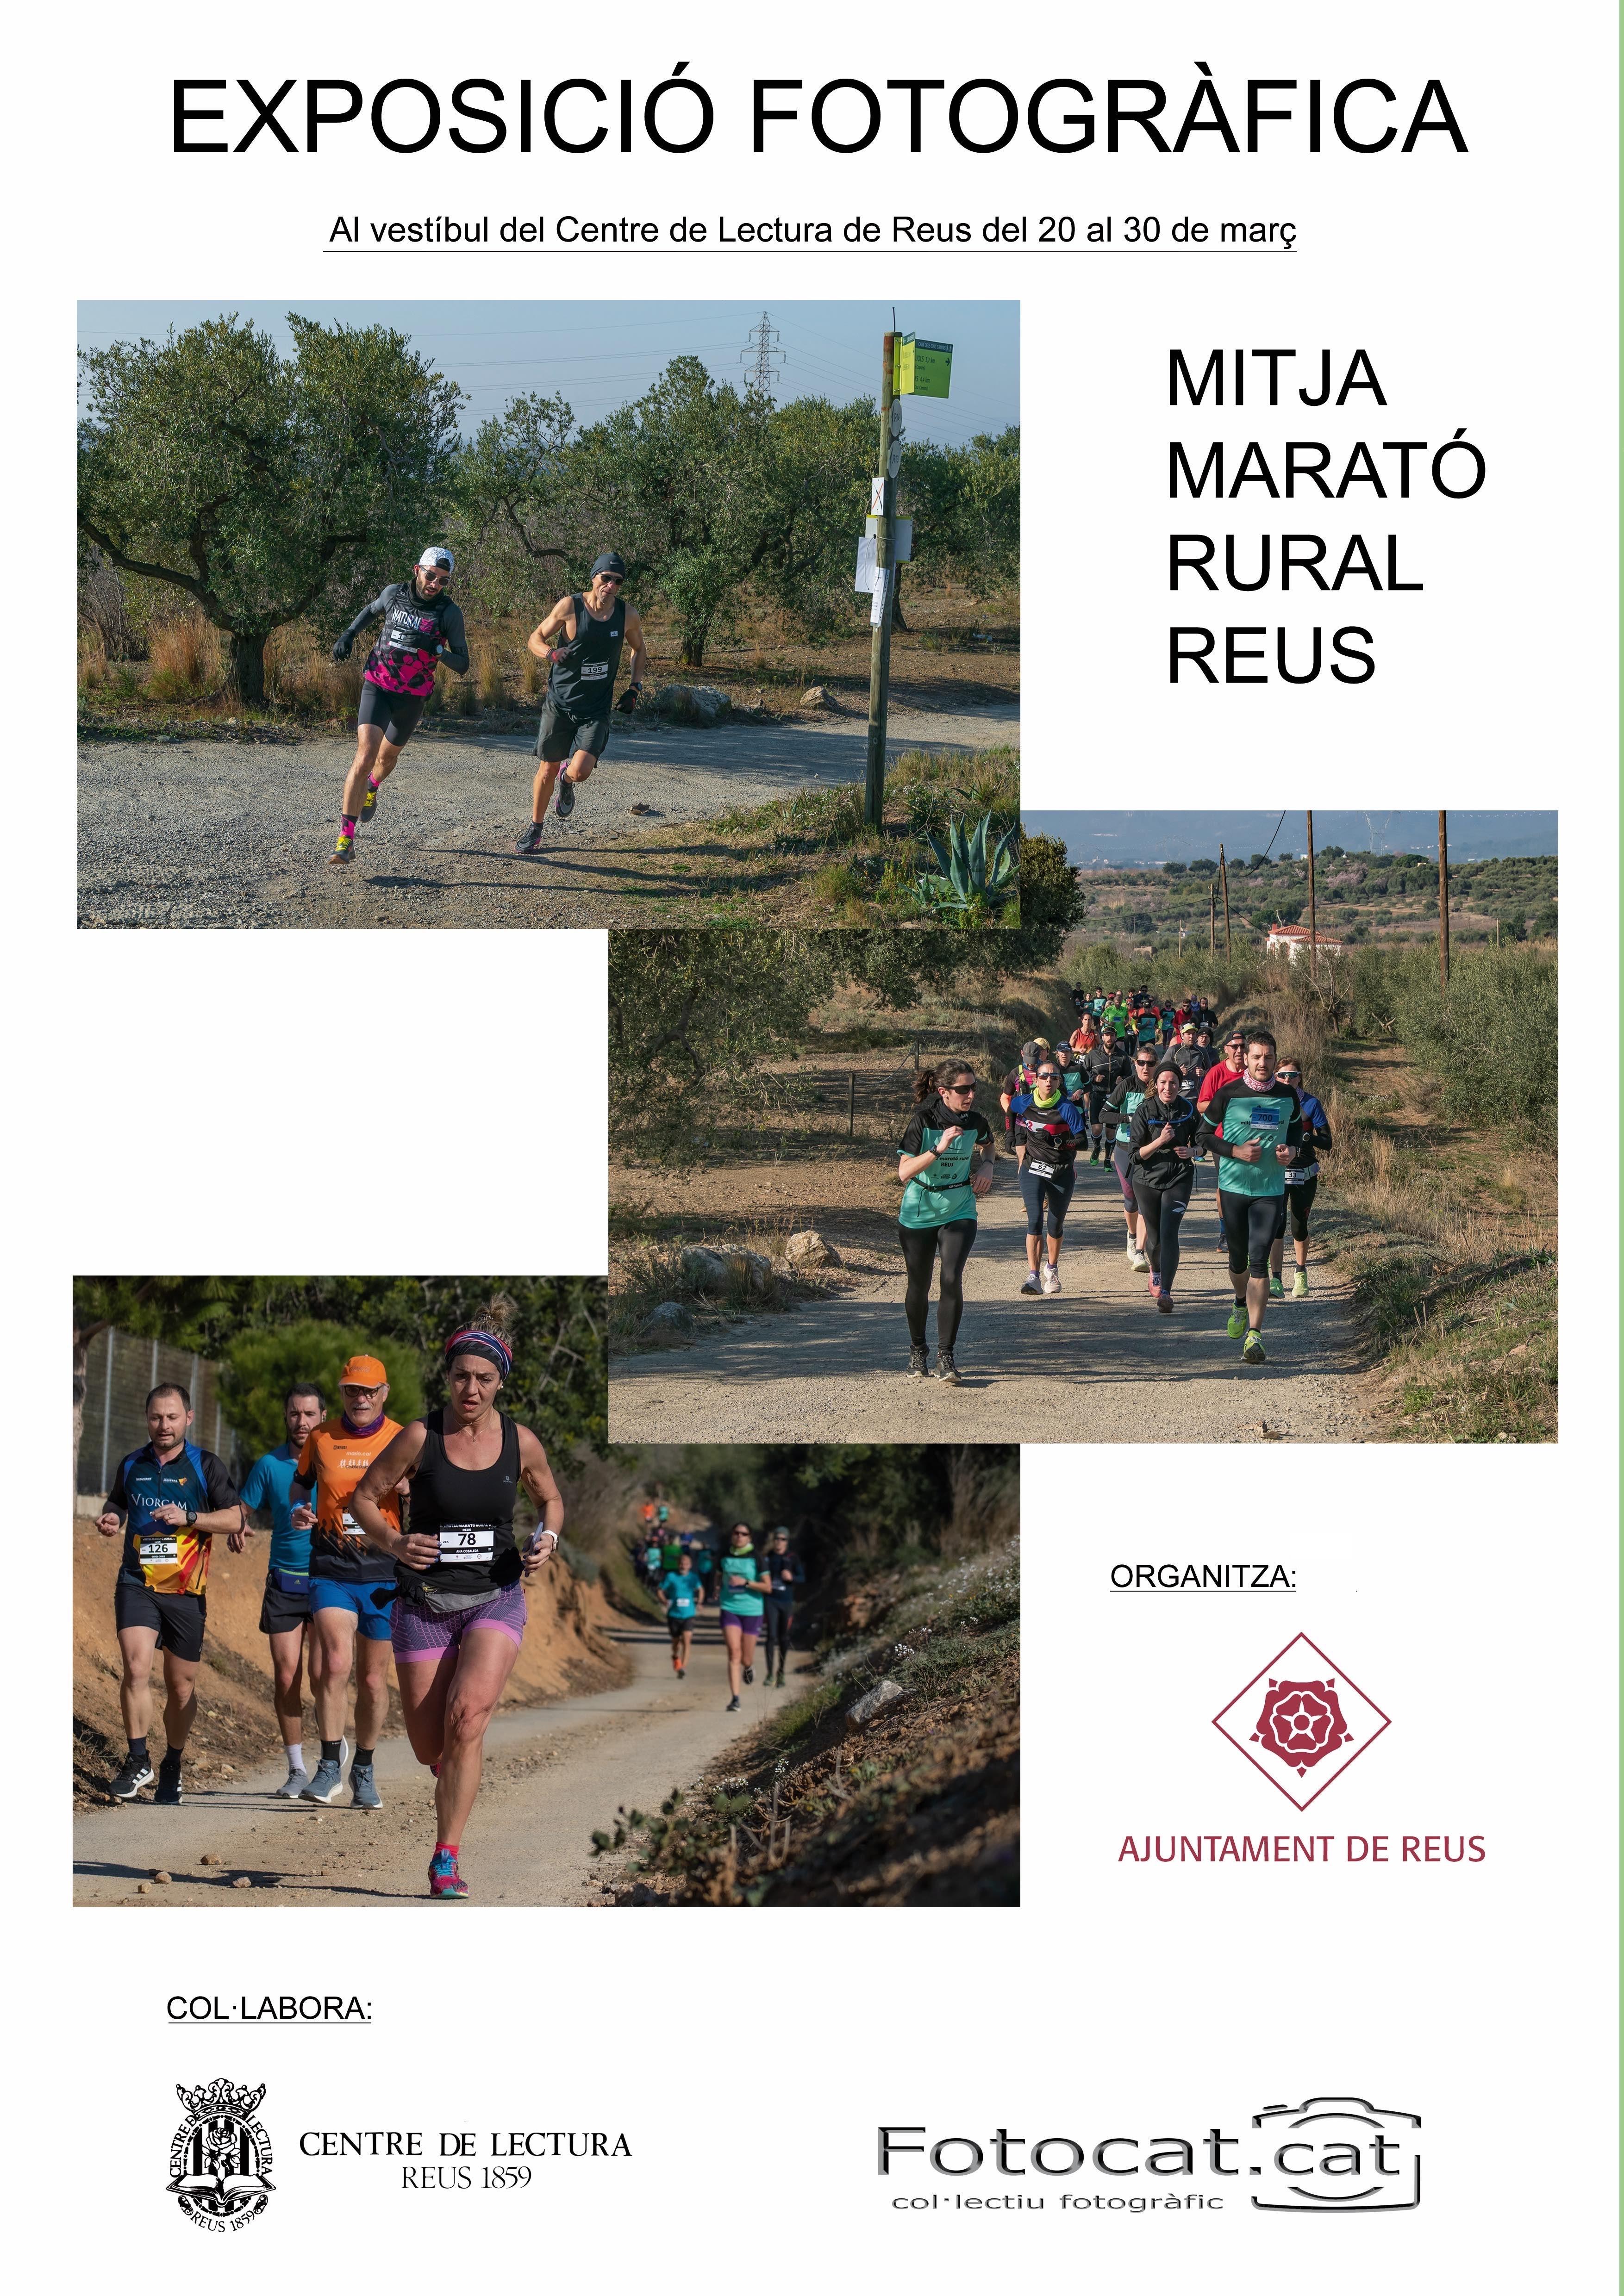 Exposició fotogràfica de la Mitja Marató Rural